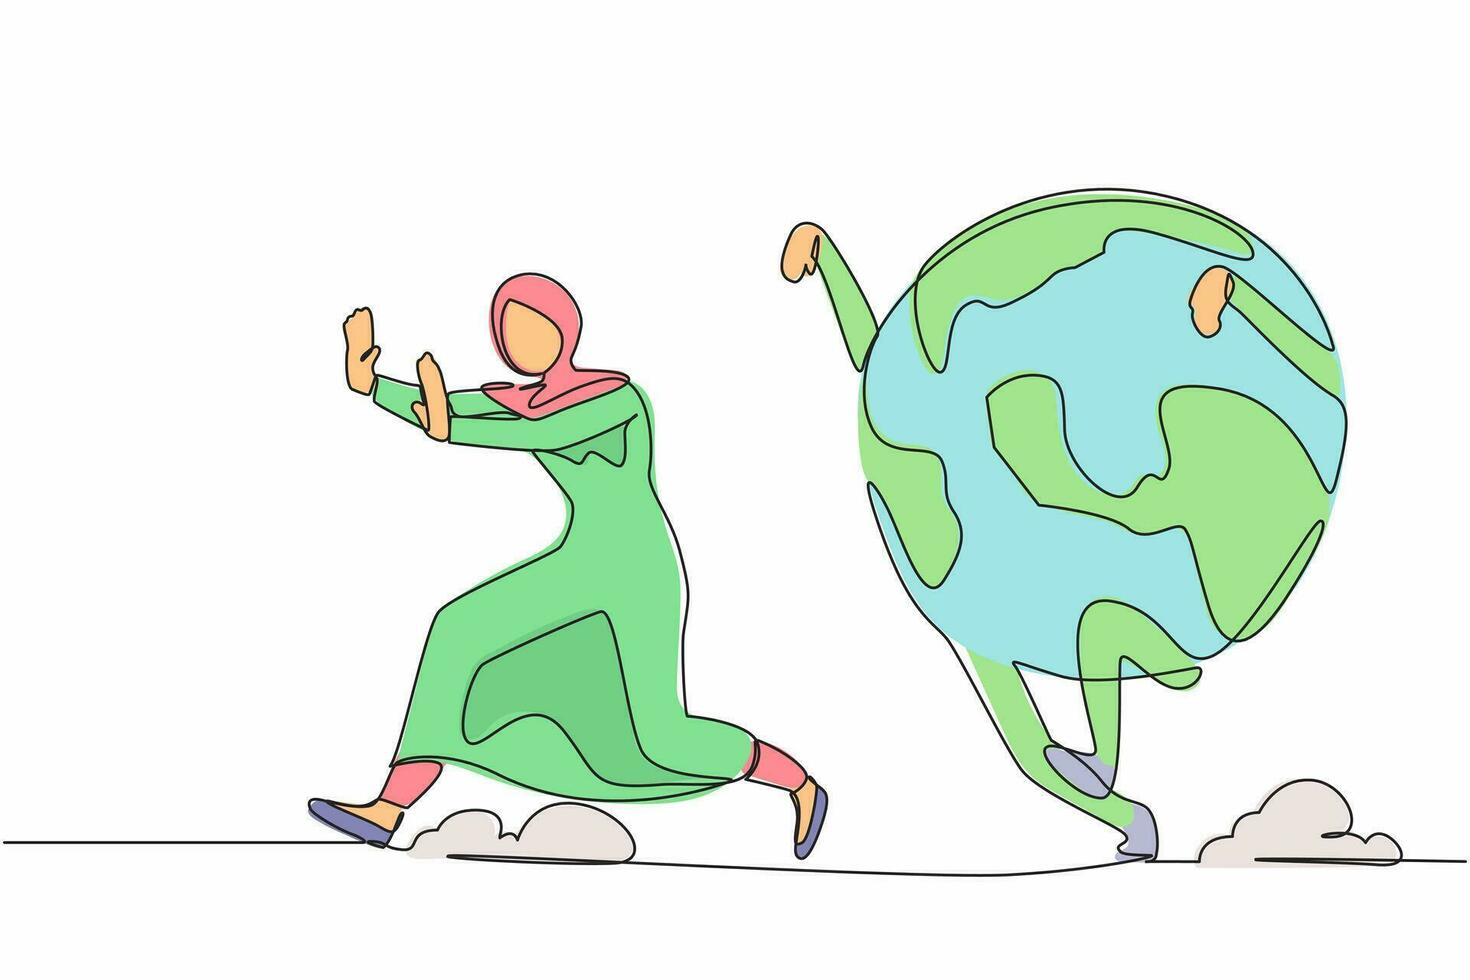 dibujo continuo de una línea susto mujer de negocios árabe perseguida por el globo. gerente femenina temerosa del cambio climático. concepto de metáfora minimalista. ilustración gráfica de vector de diseño de línea única